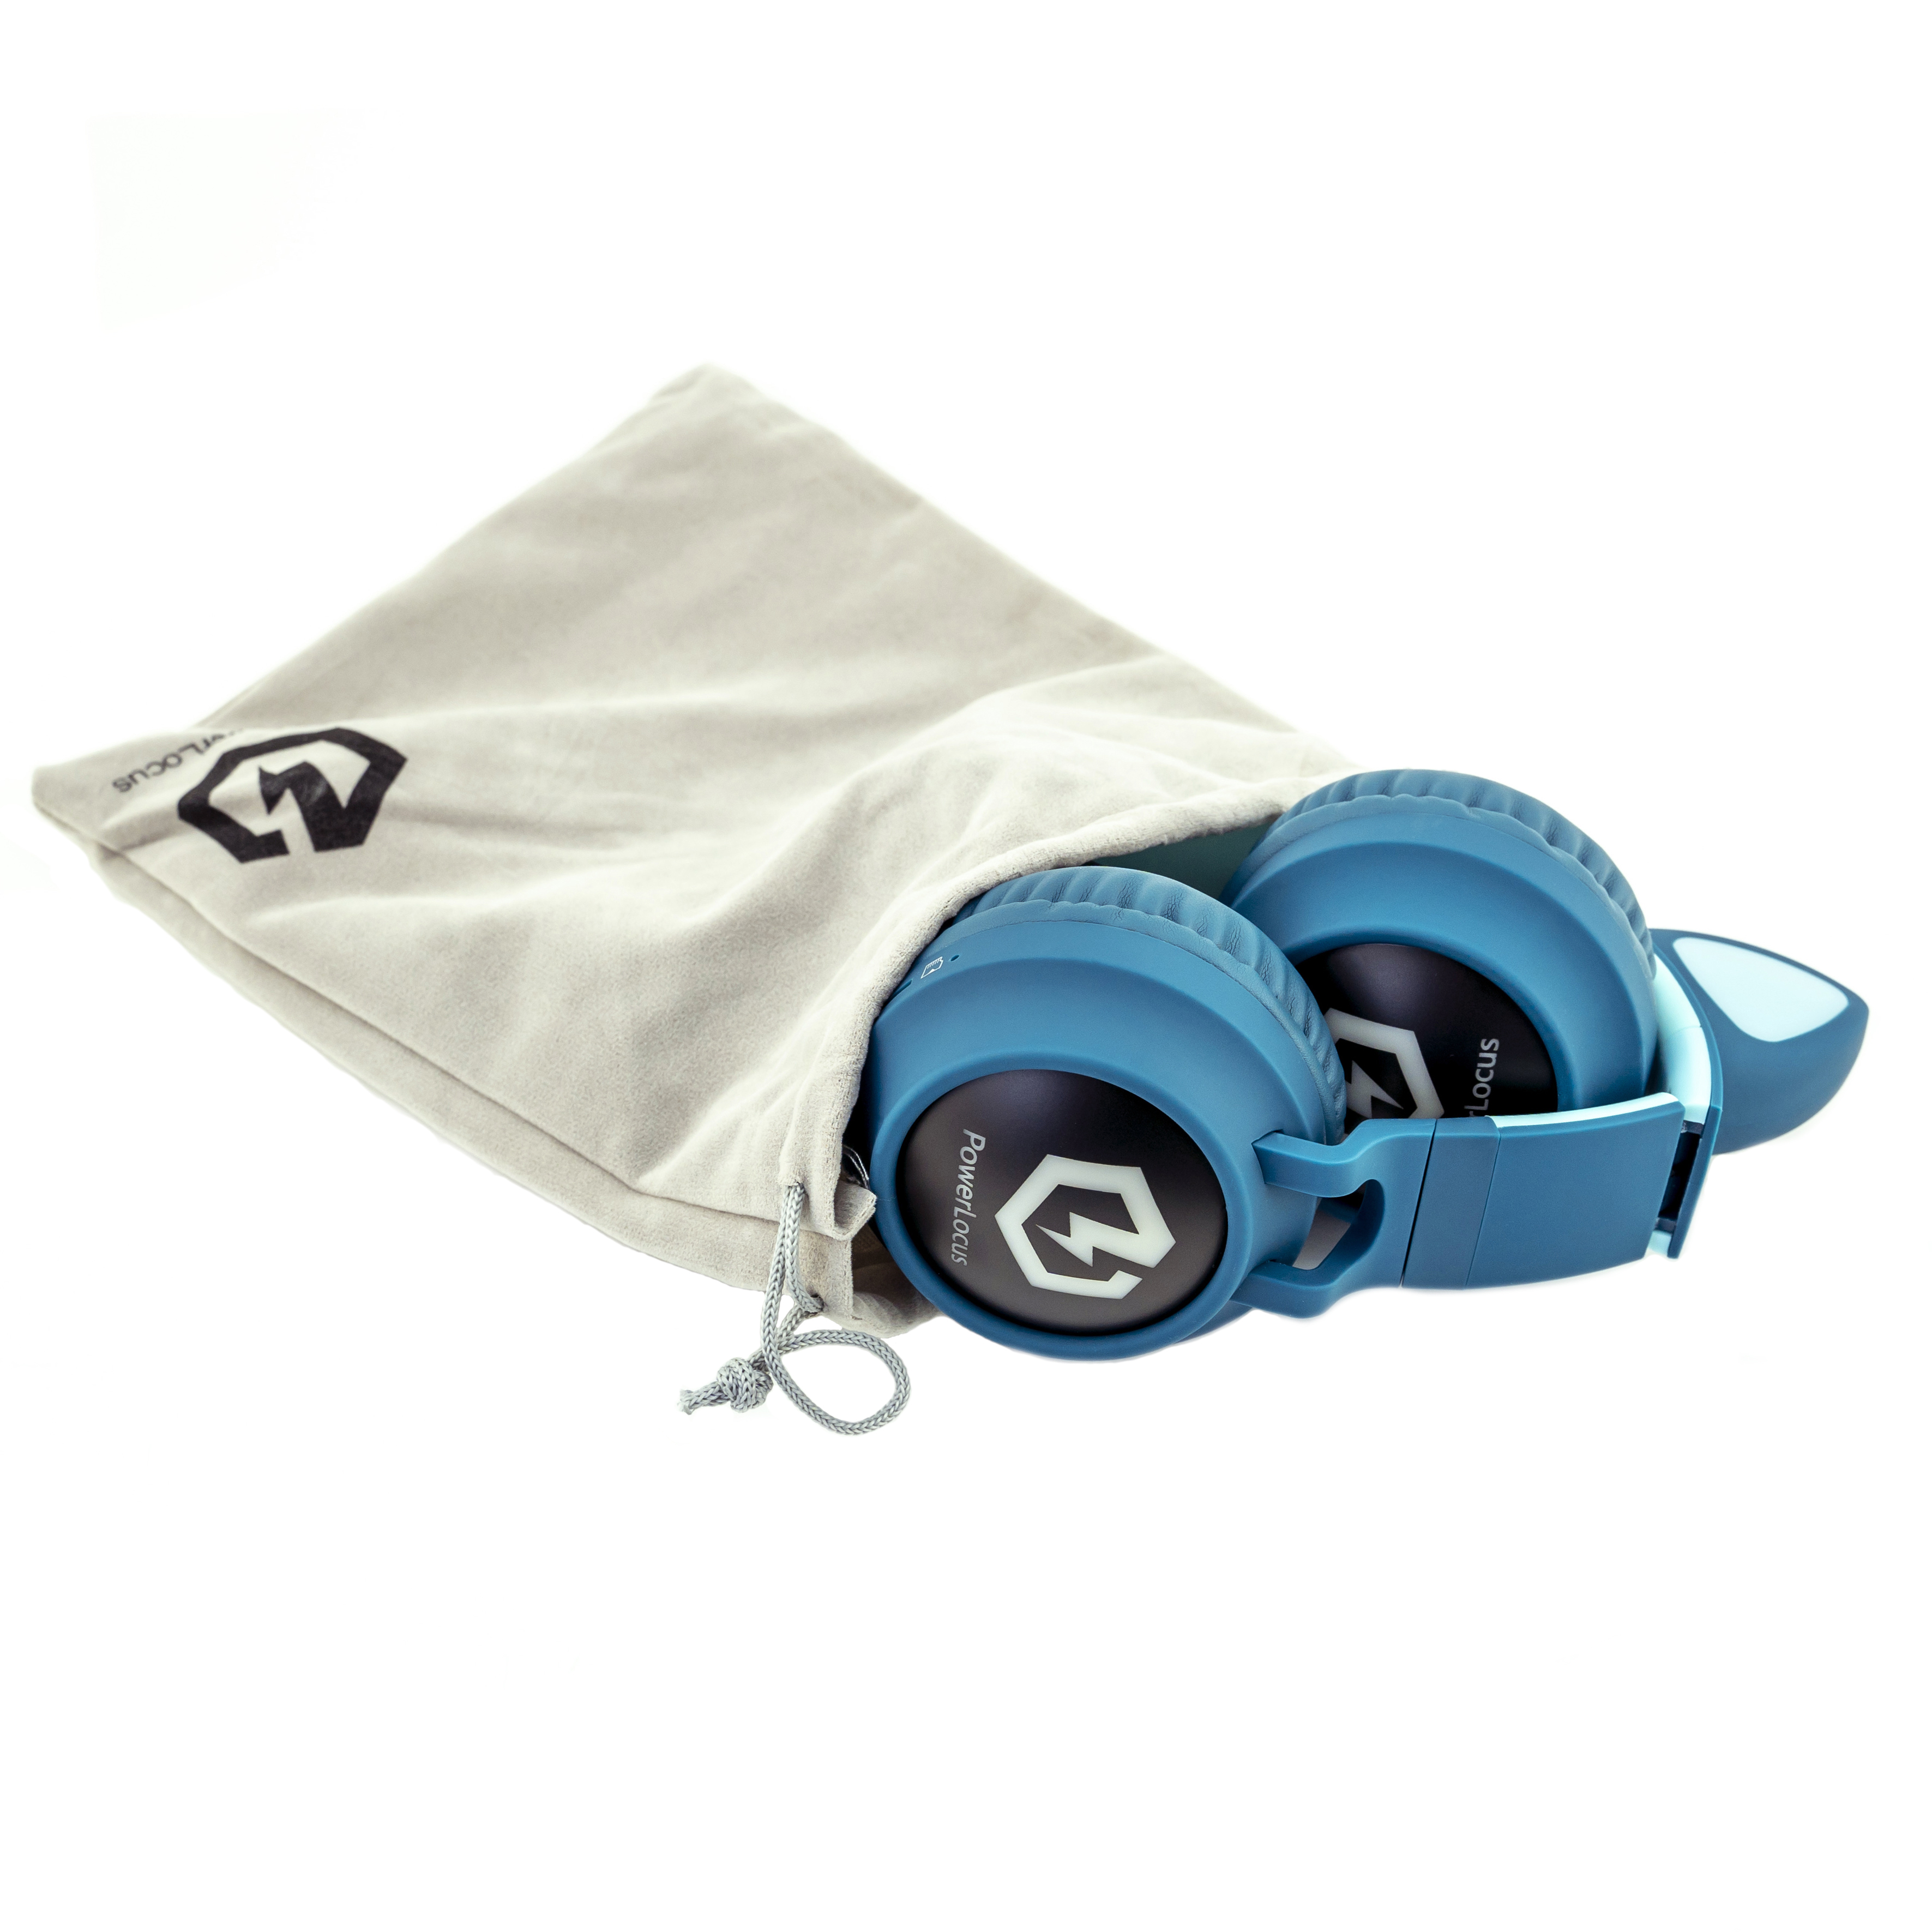 POWERLOCUS Buddy Over-ear Bluetooth Kopfhörer für Kinder, Blau